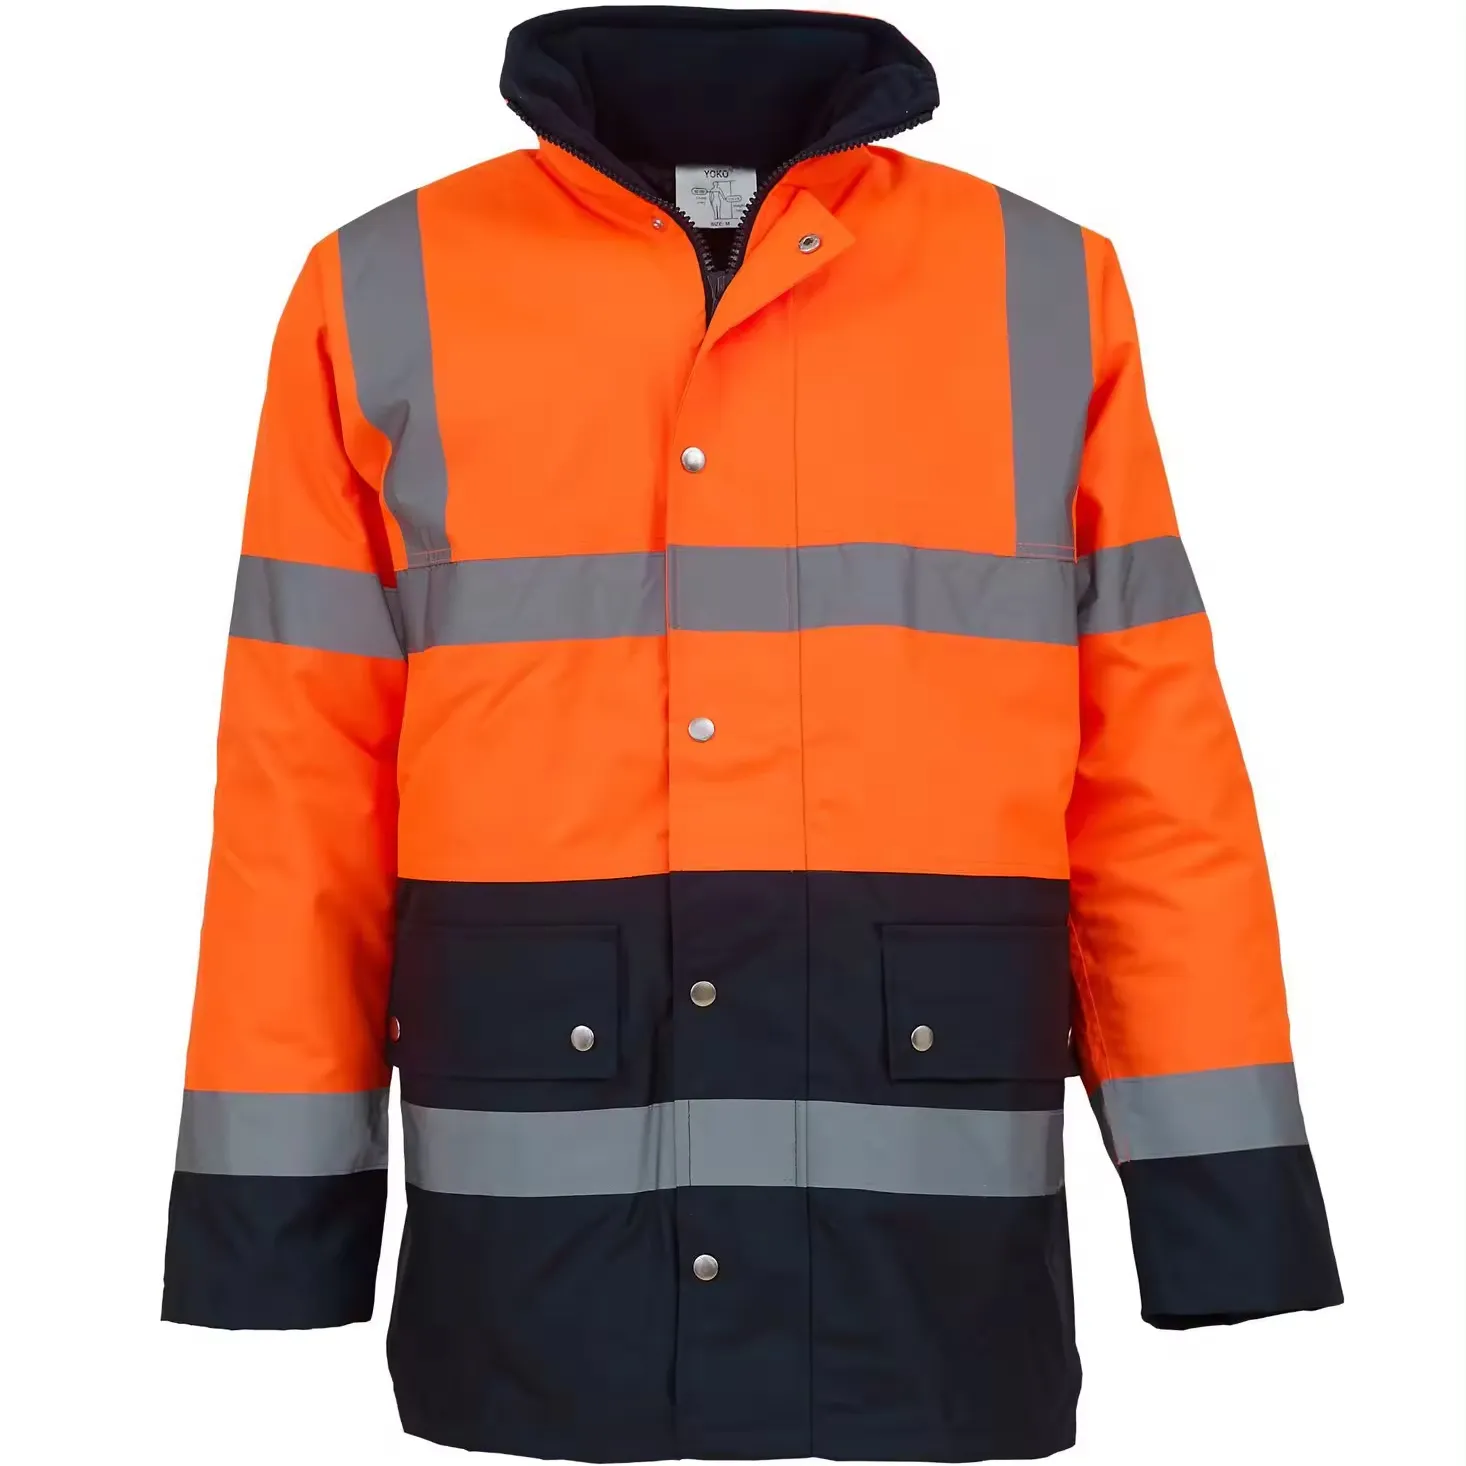 JinTeng Unisex Hi Vis abbigliamento riflettente autunno inverno giacca calda impermeabile in cotone giacca di sicurezza stradale